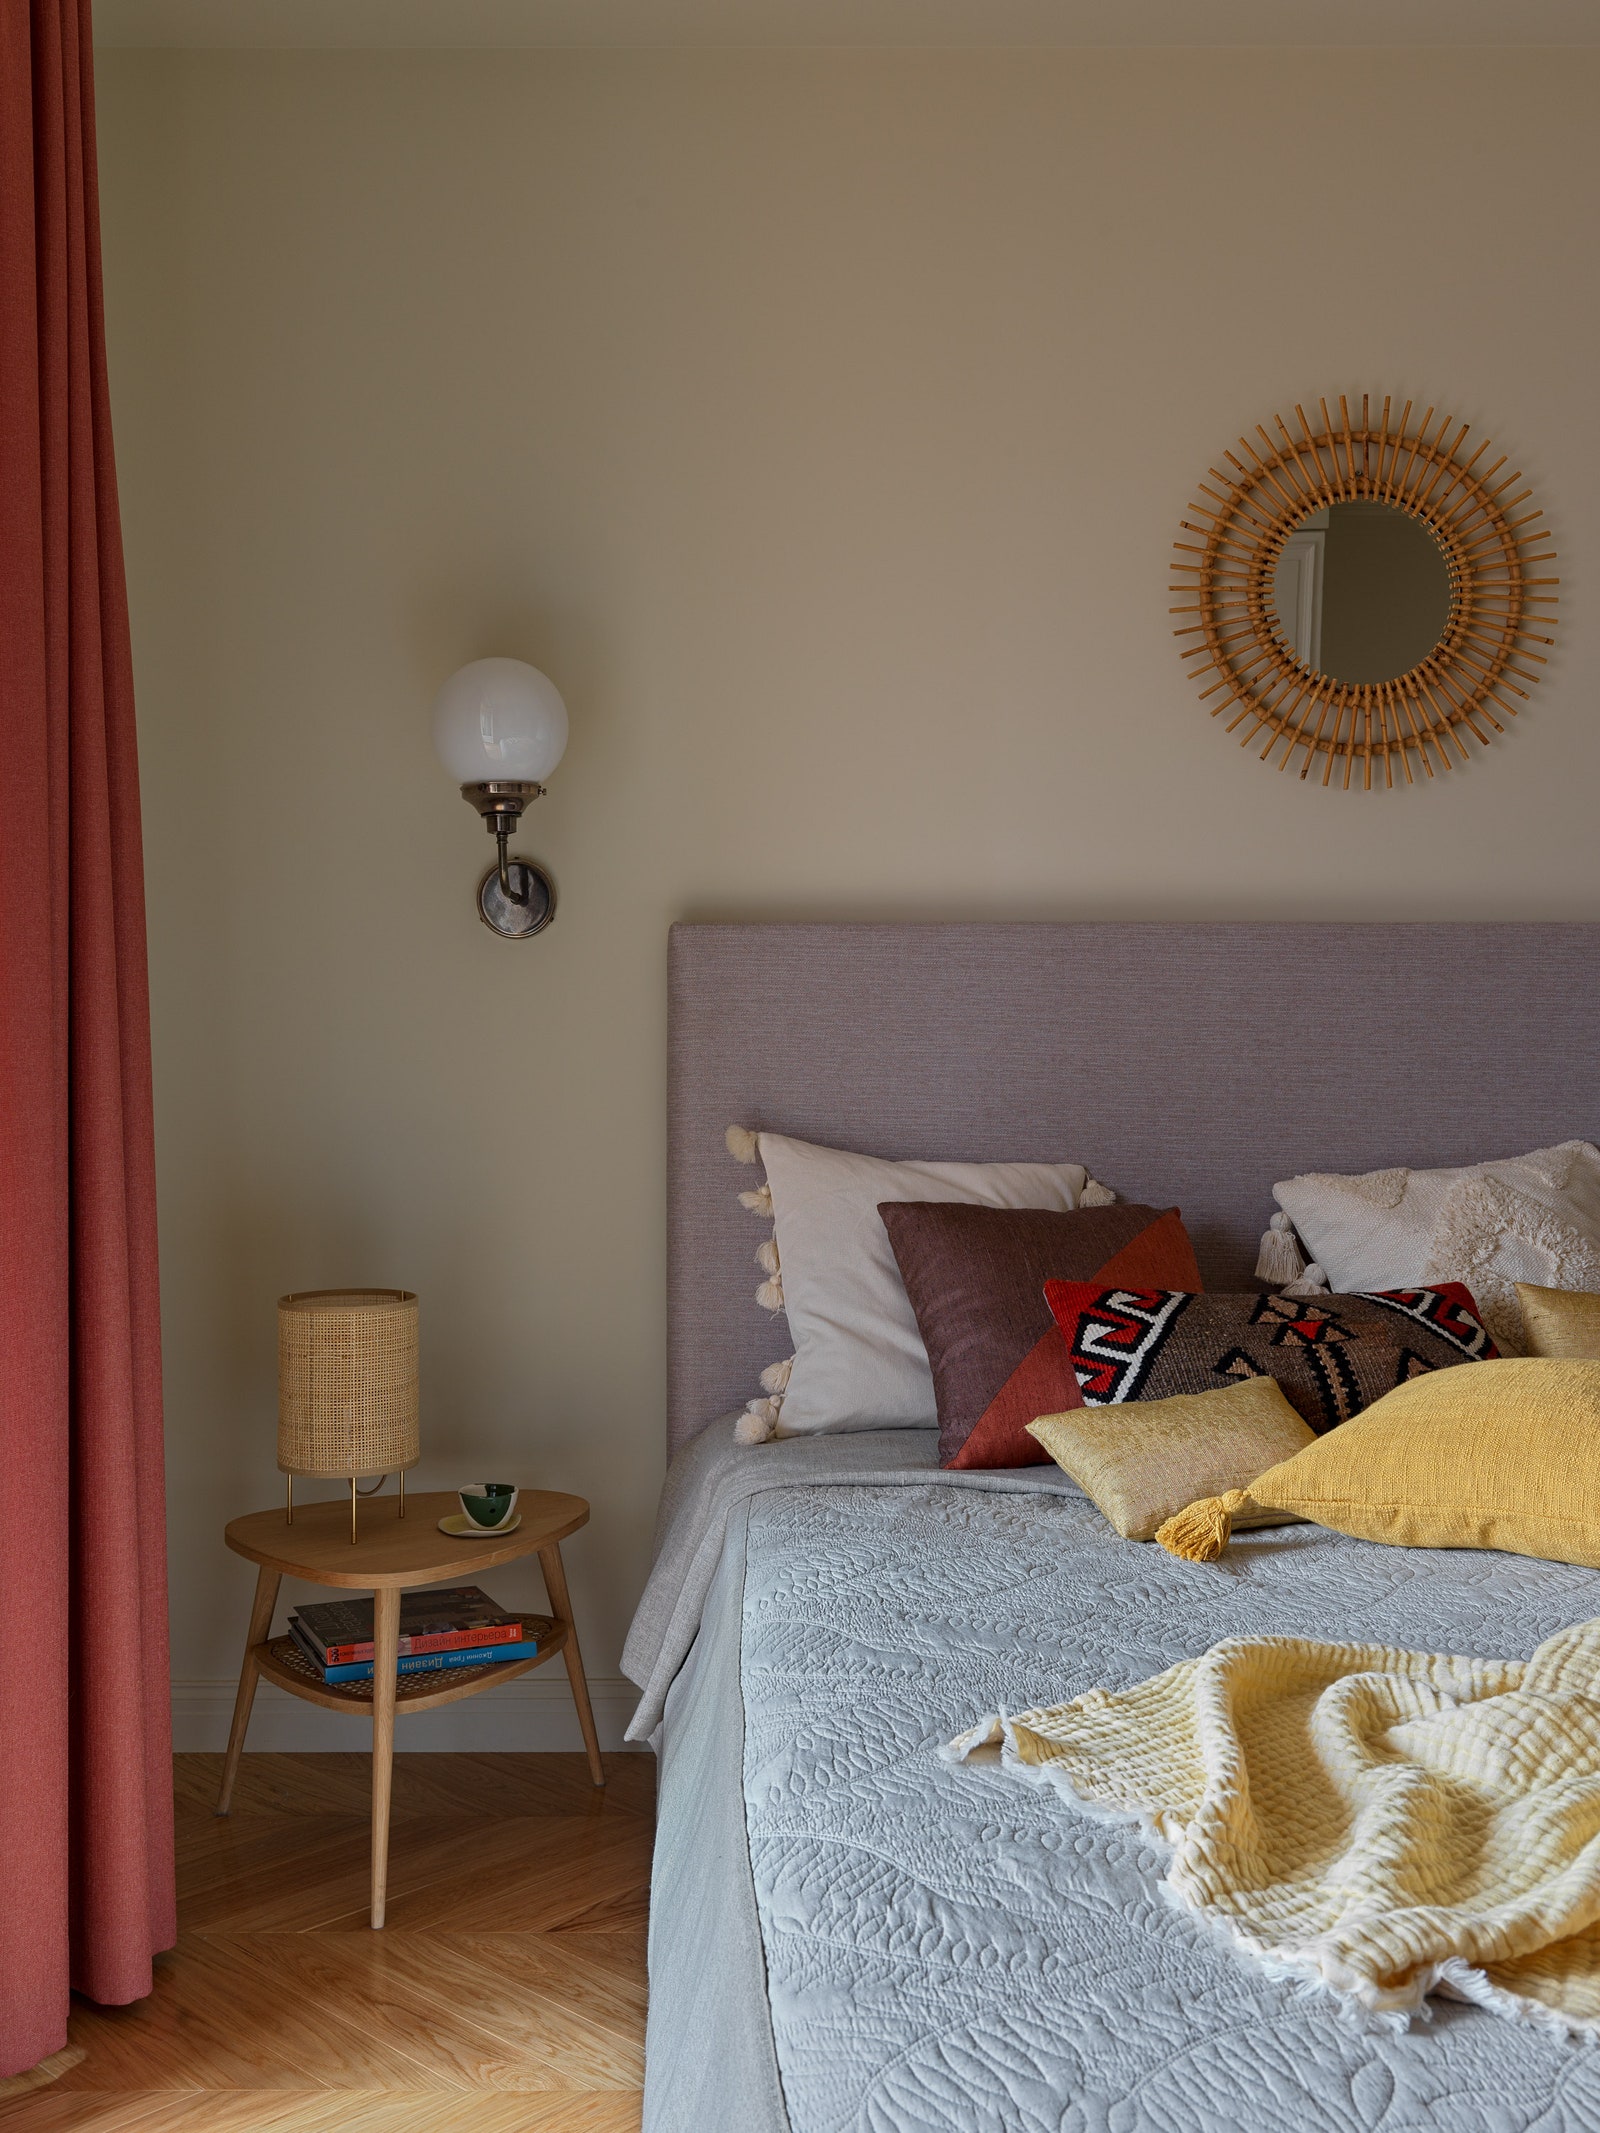 Фрагмент спальни. Кровать Dantone Home столик и зеркало La Redoute подушки Zara Home Nomad Сhic.